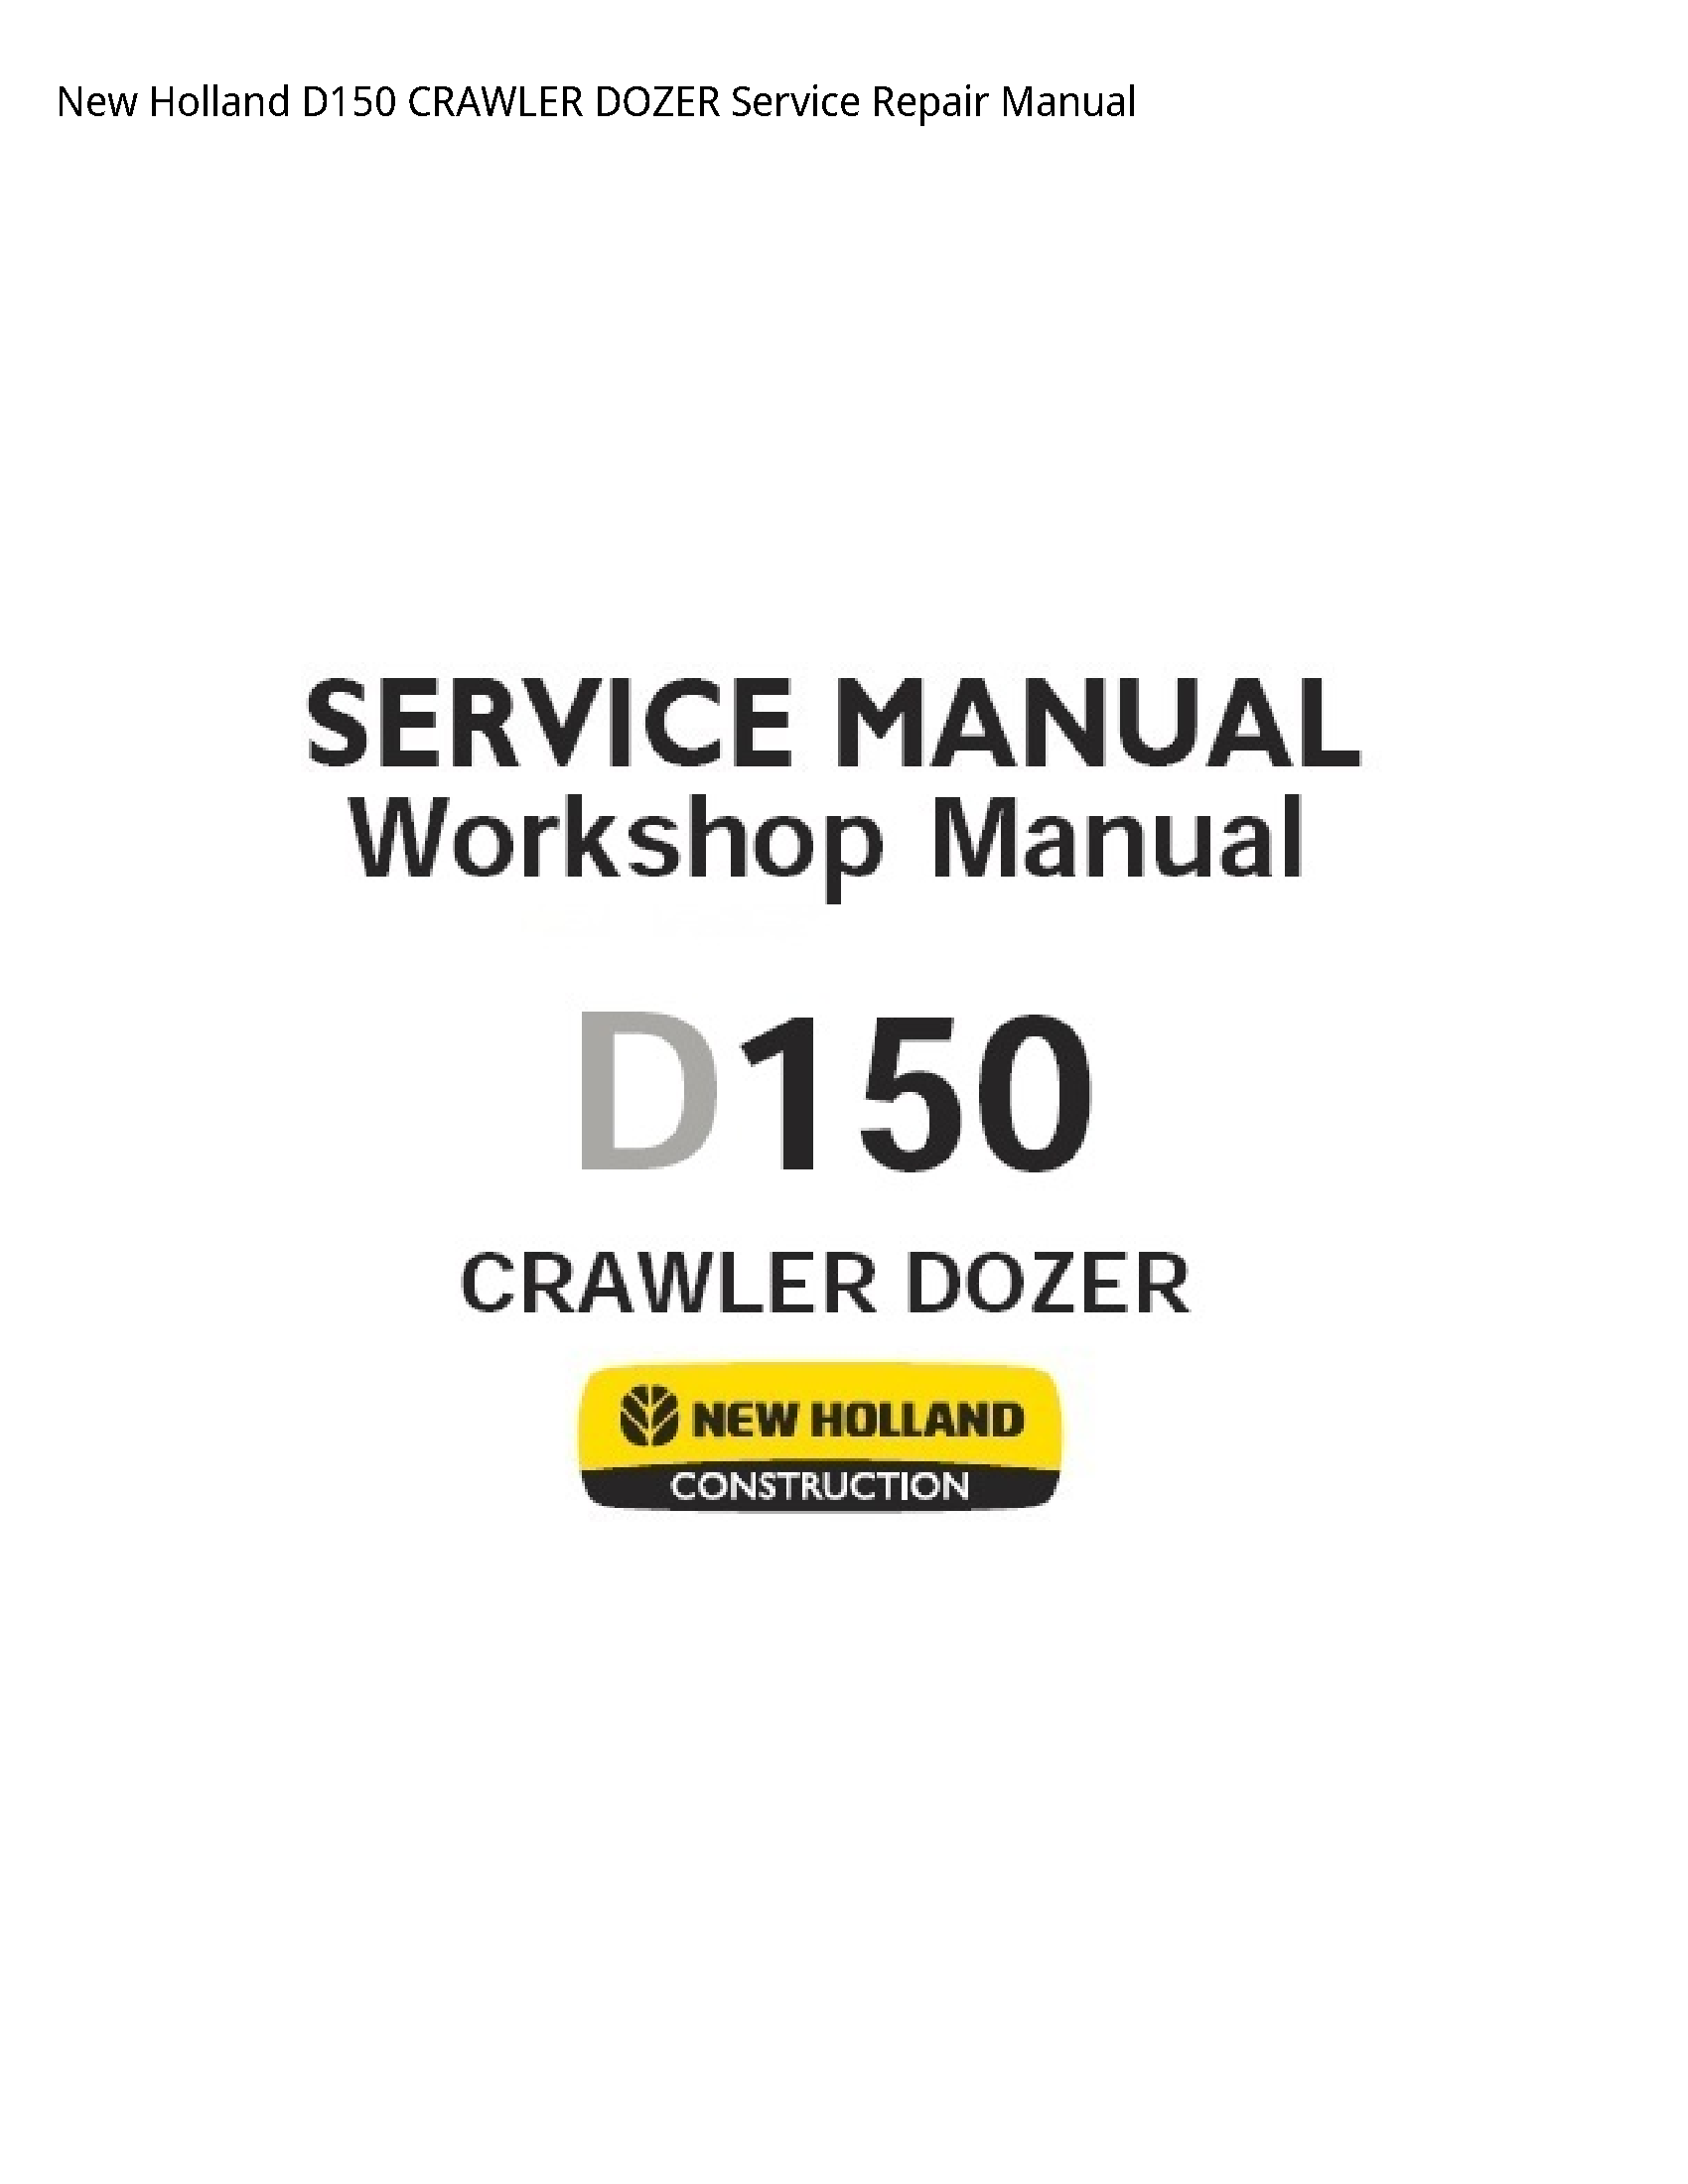 New Holland D150 CRAWLER DOZER manual